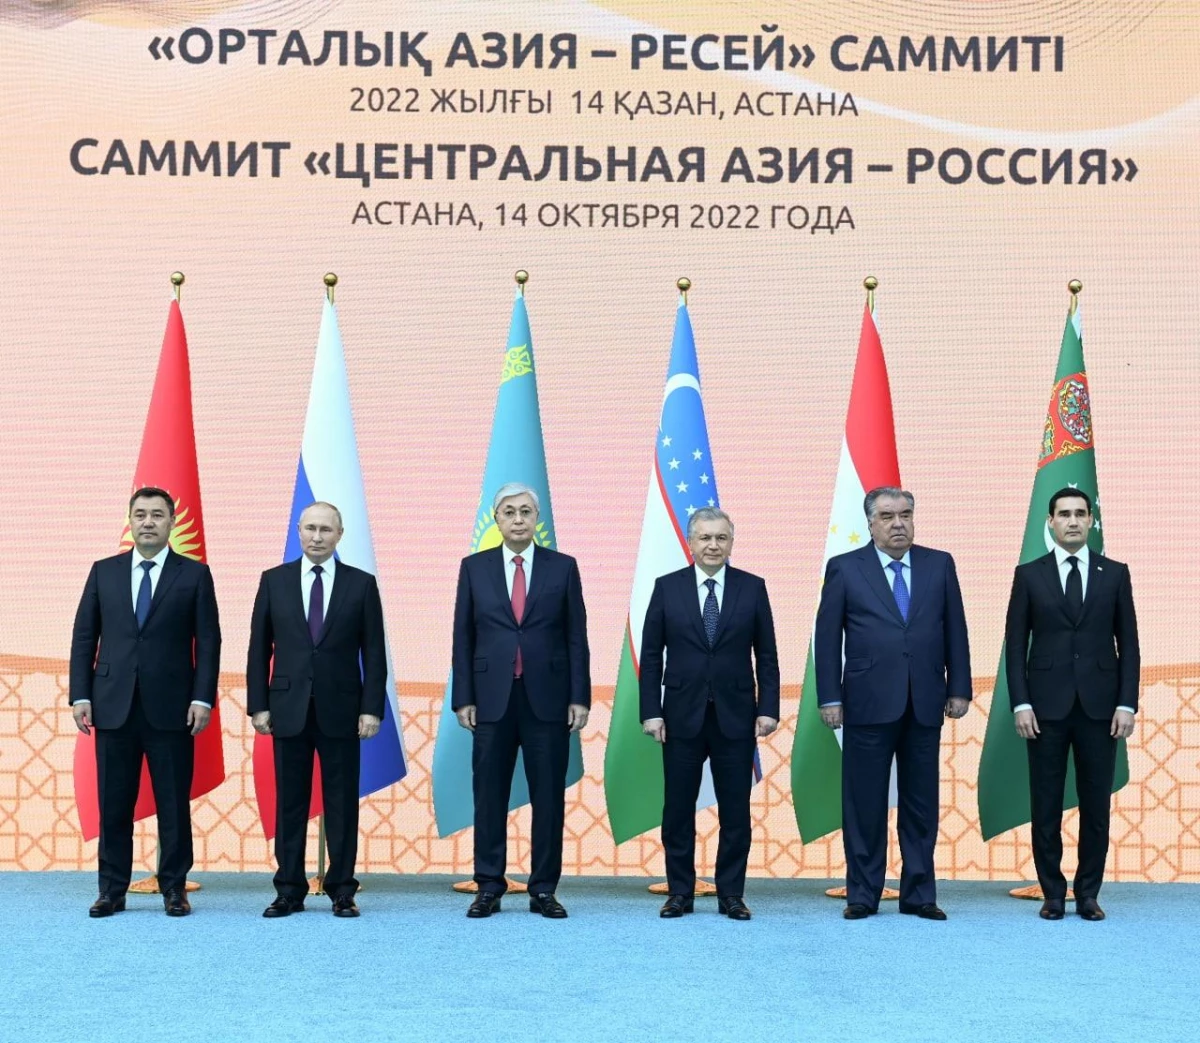 Çankırı haber: Orta Asya-Rusya Zirvesi\'nde Afganistan ve bölgedeki güvenliğin önemine vurgu yapıldı